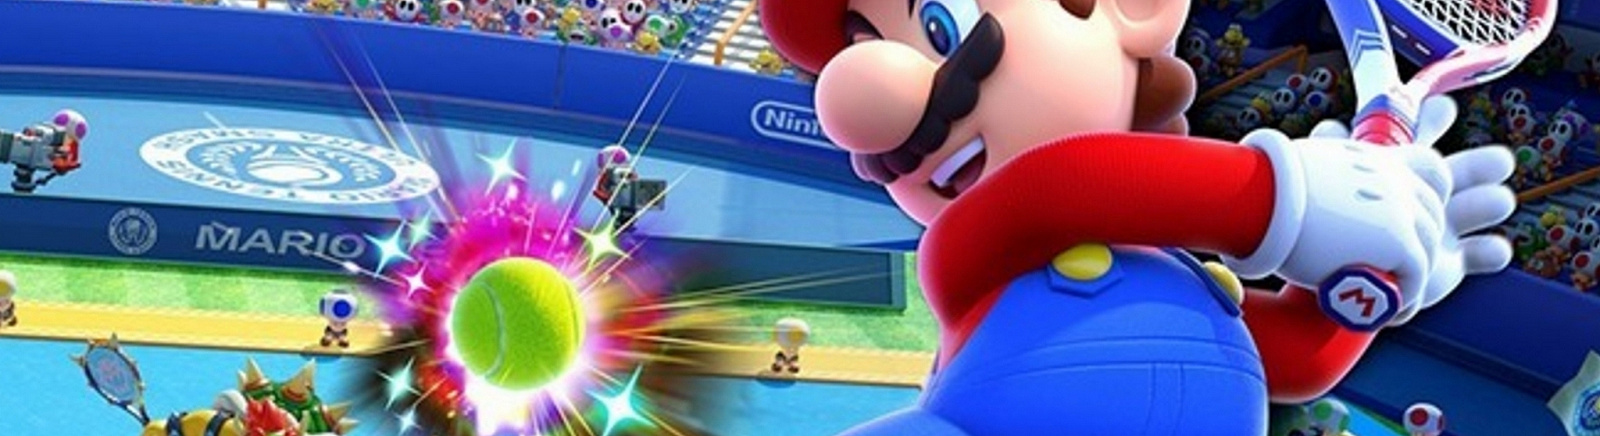 Дата выхода Mario Tennis Ultra Smash  на Wii U в России и во всем мире